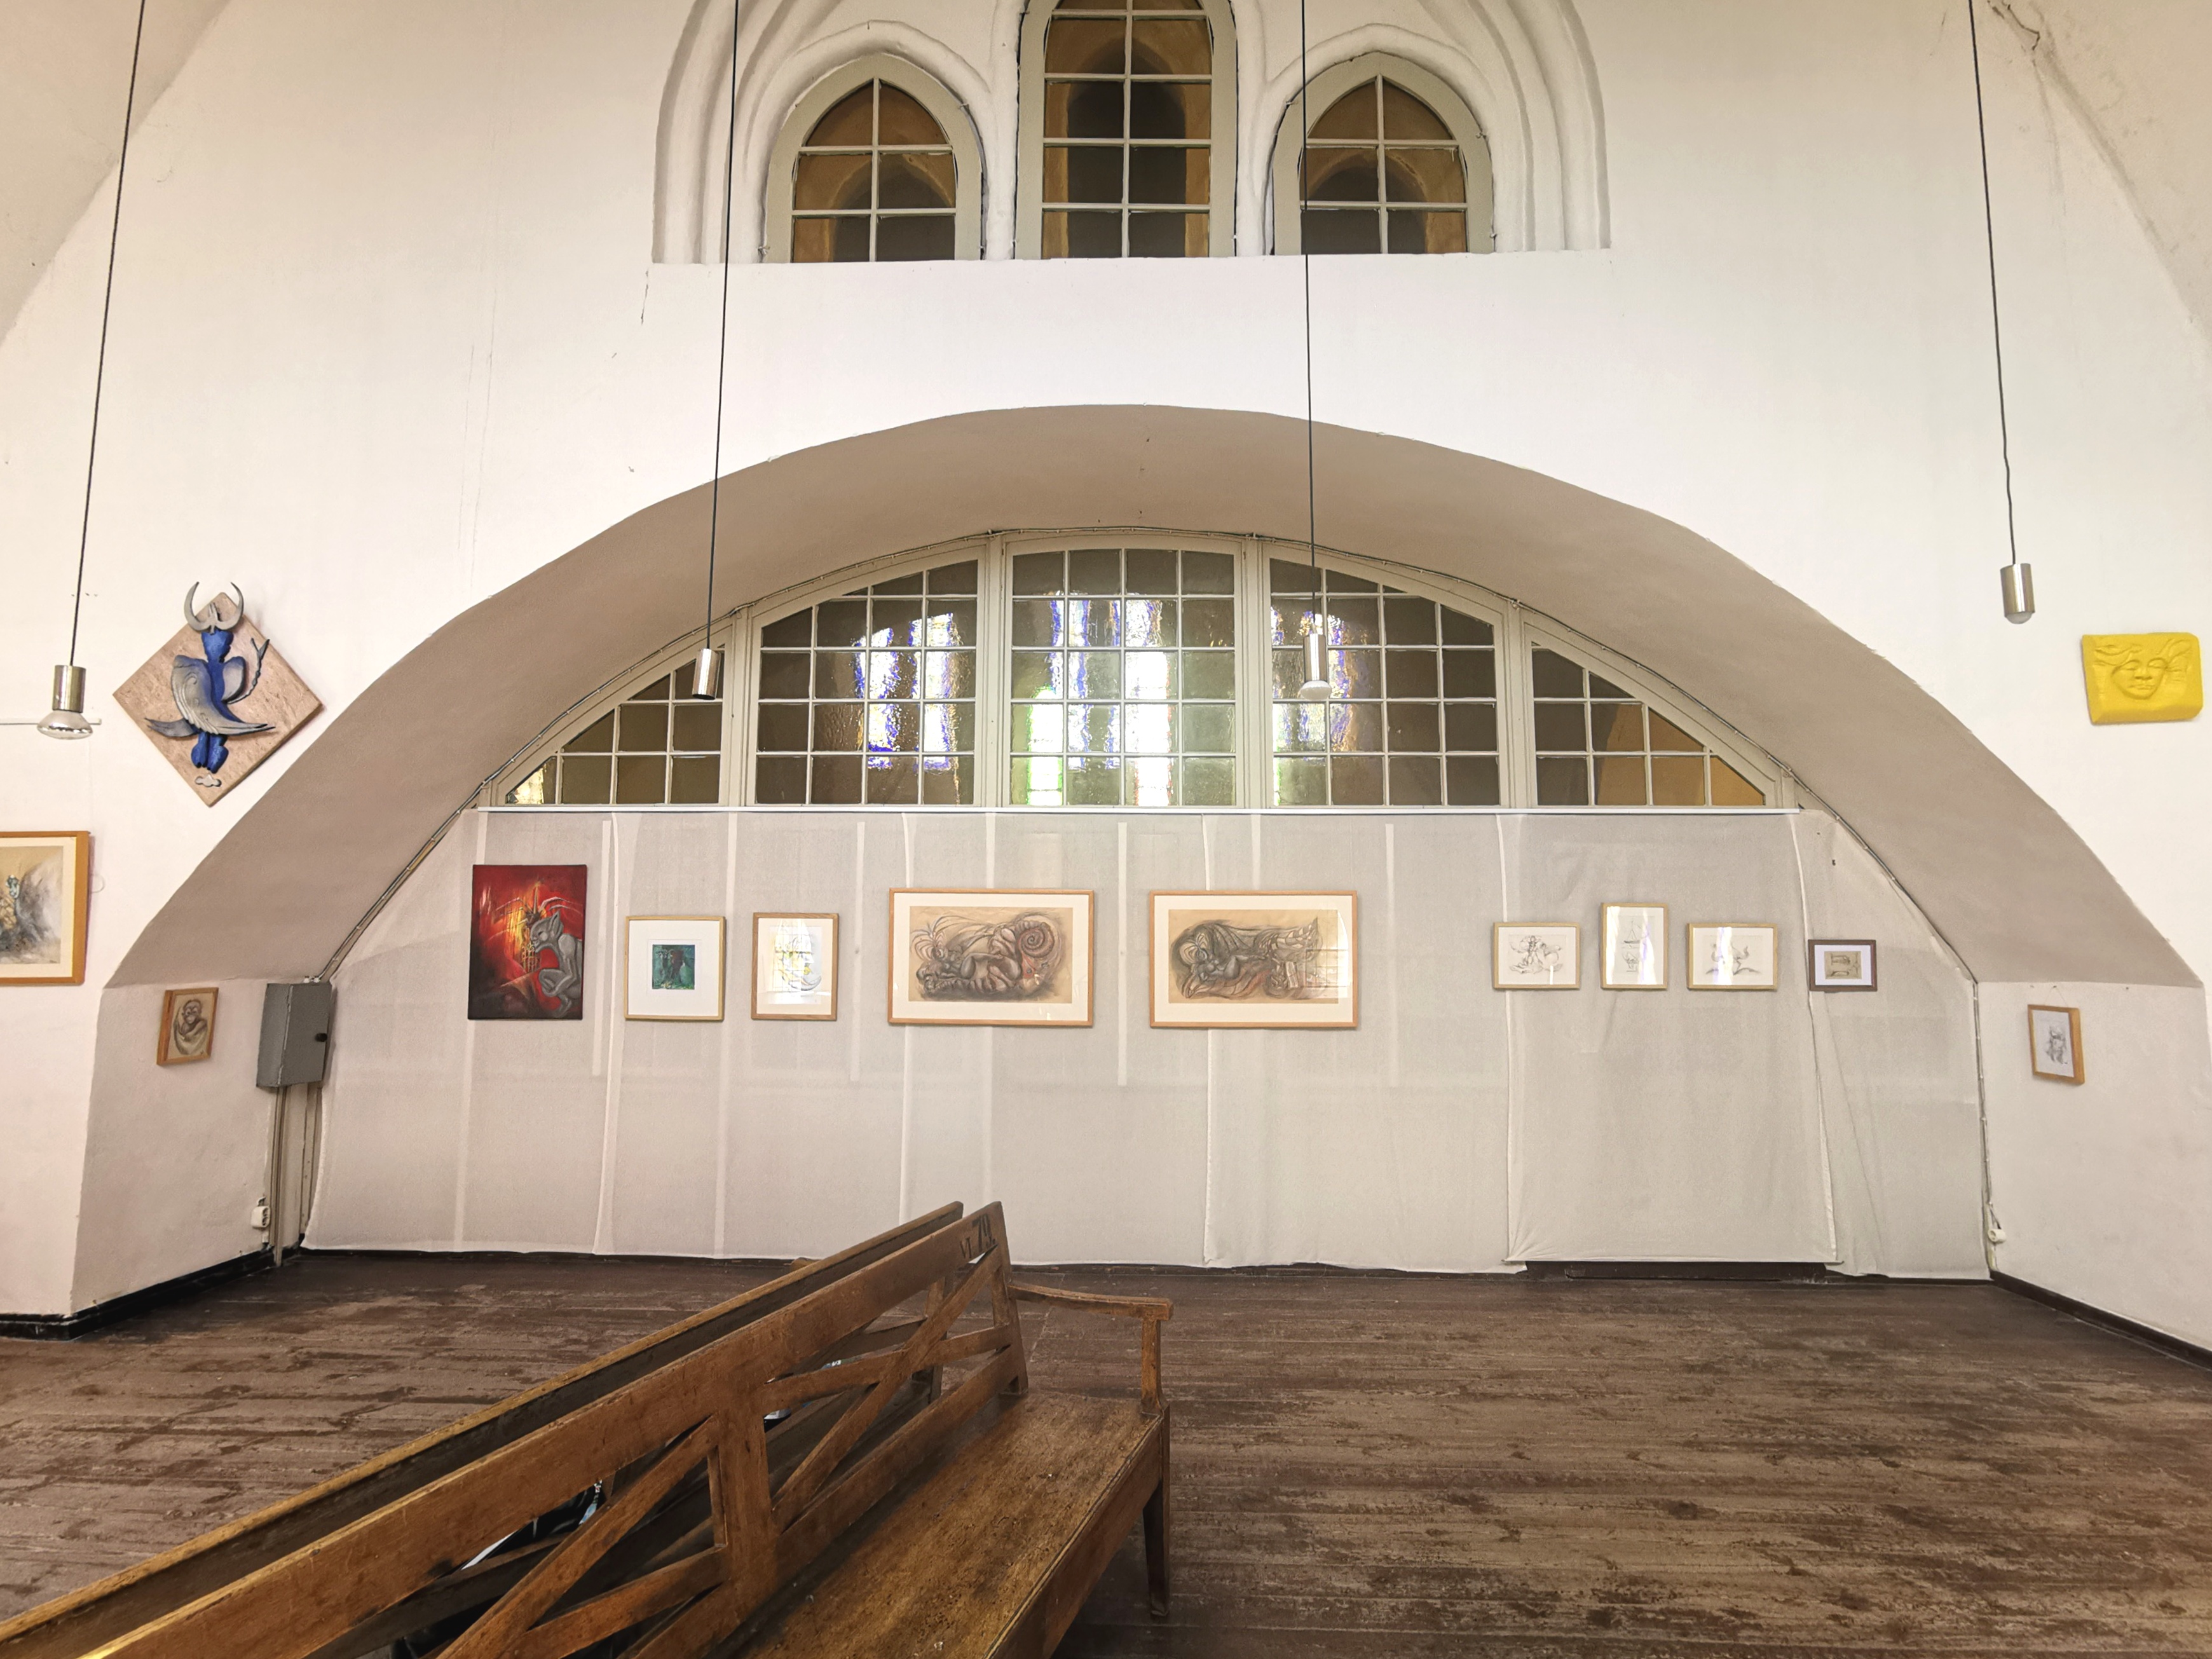 Sommerausstellung „Mythos? Logisch“ von Nora Gauger in der Winterkirche Schwaan